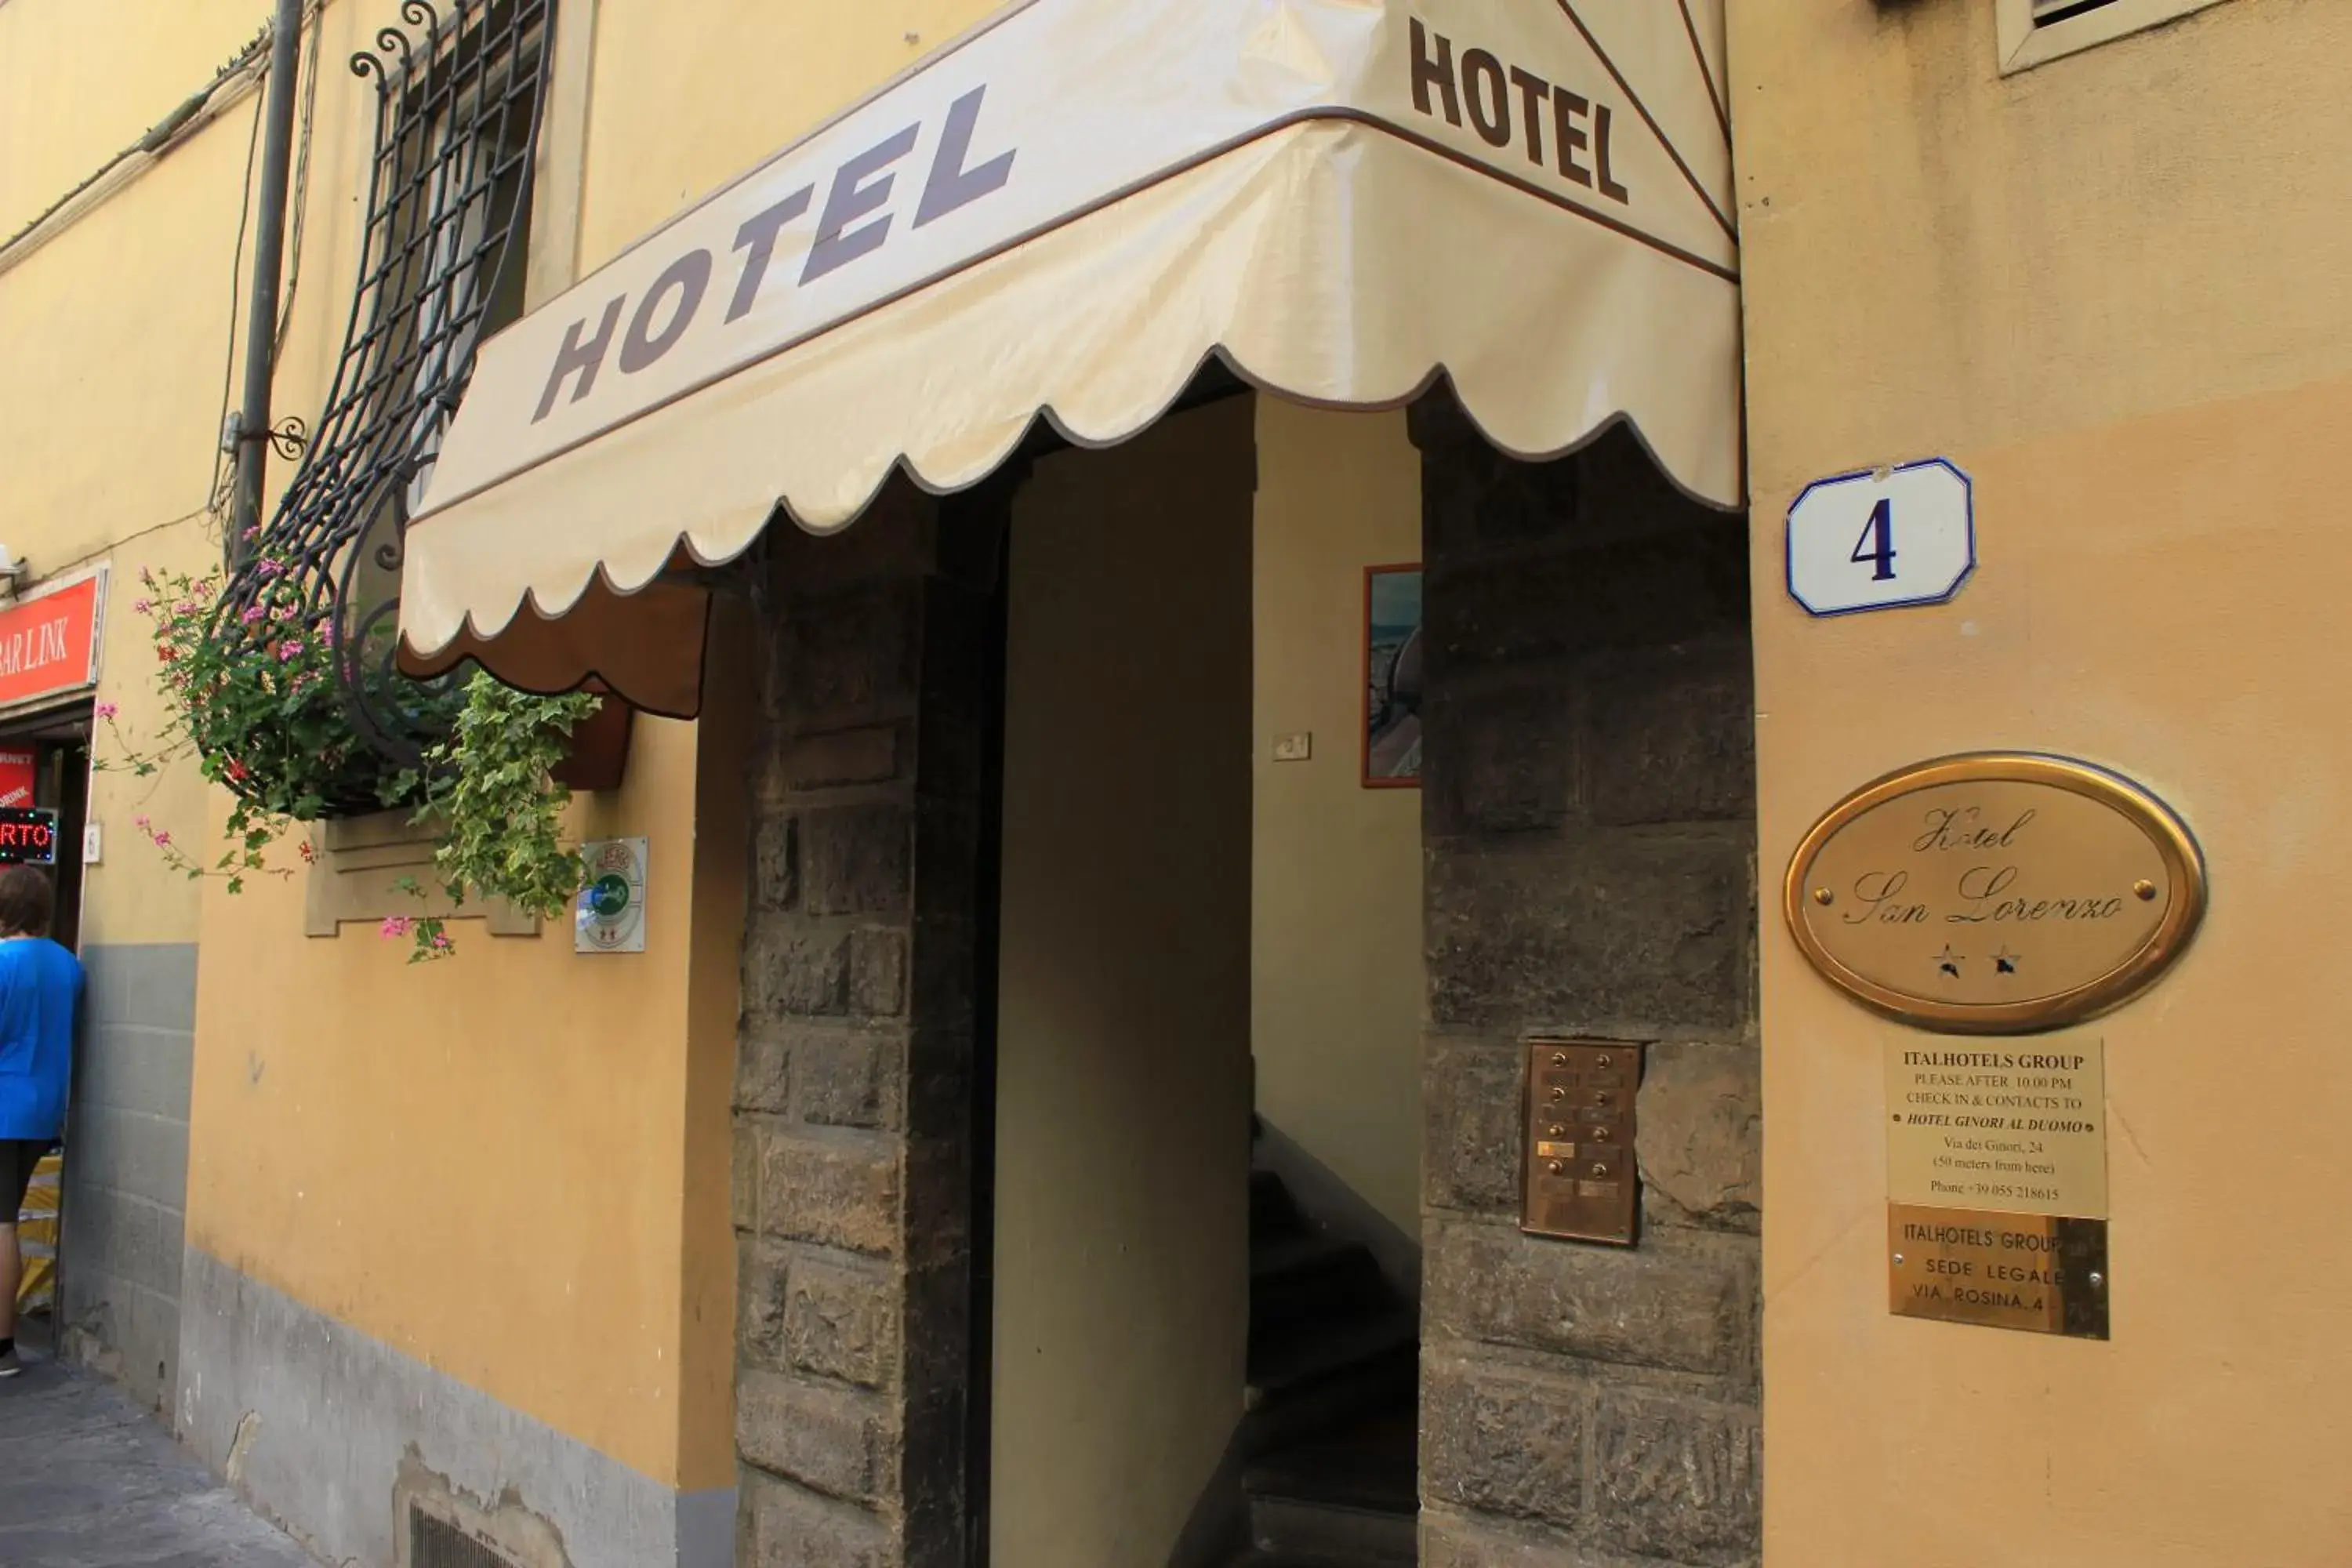 Facade/entrance in Hotel San Lorenzo